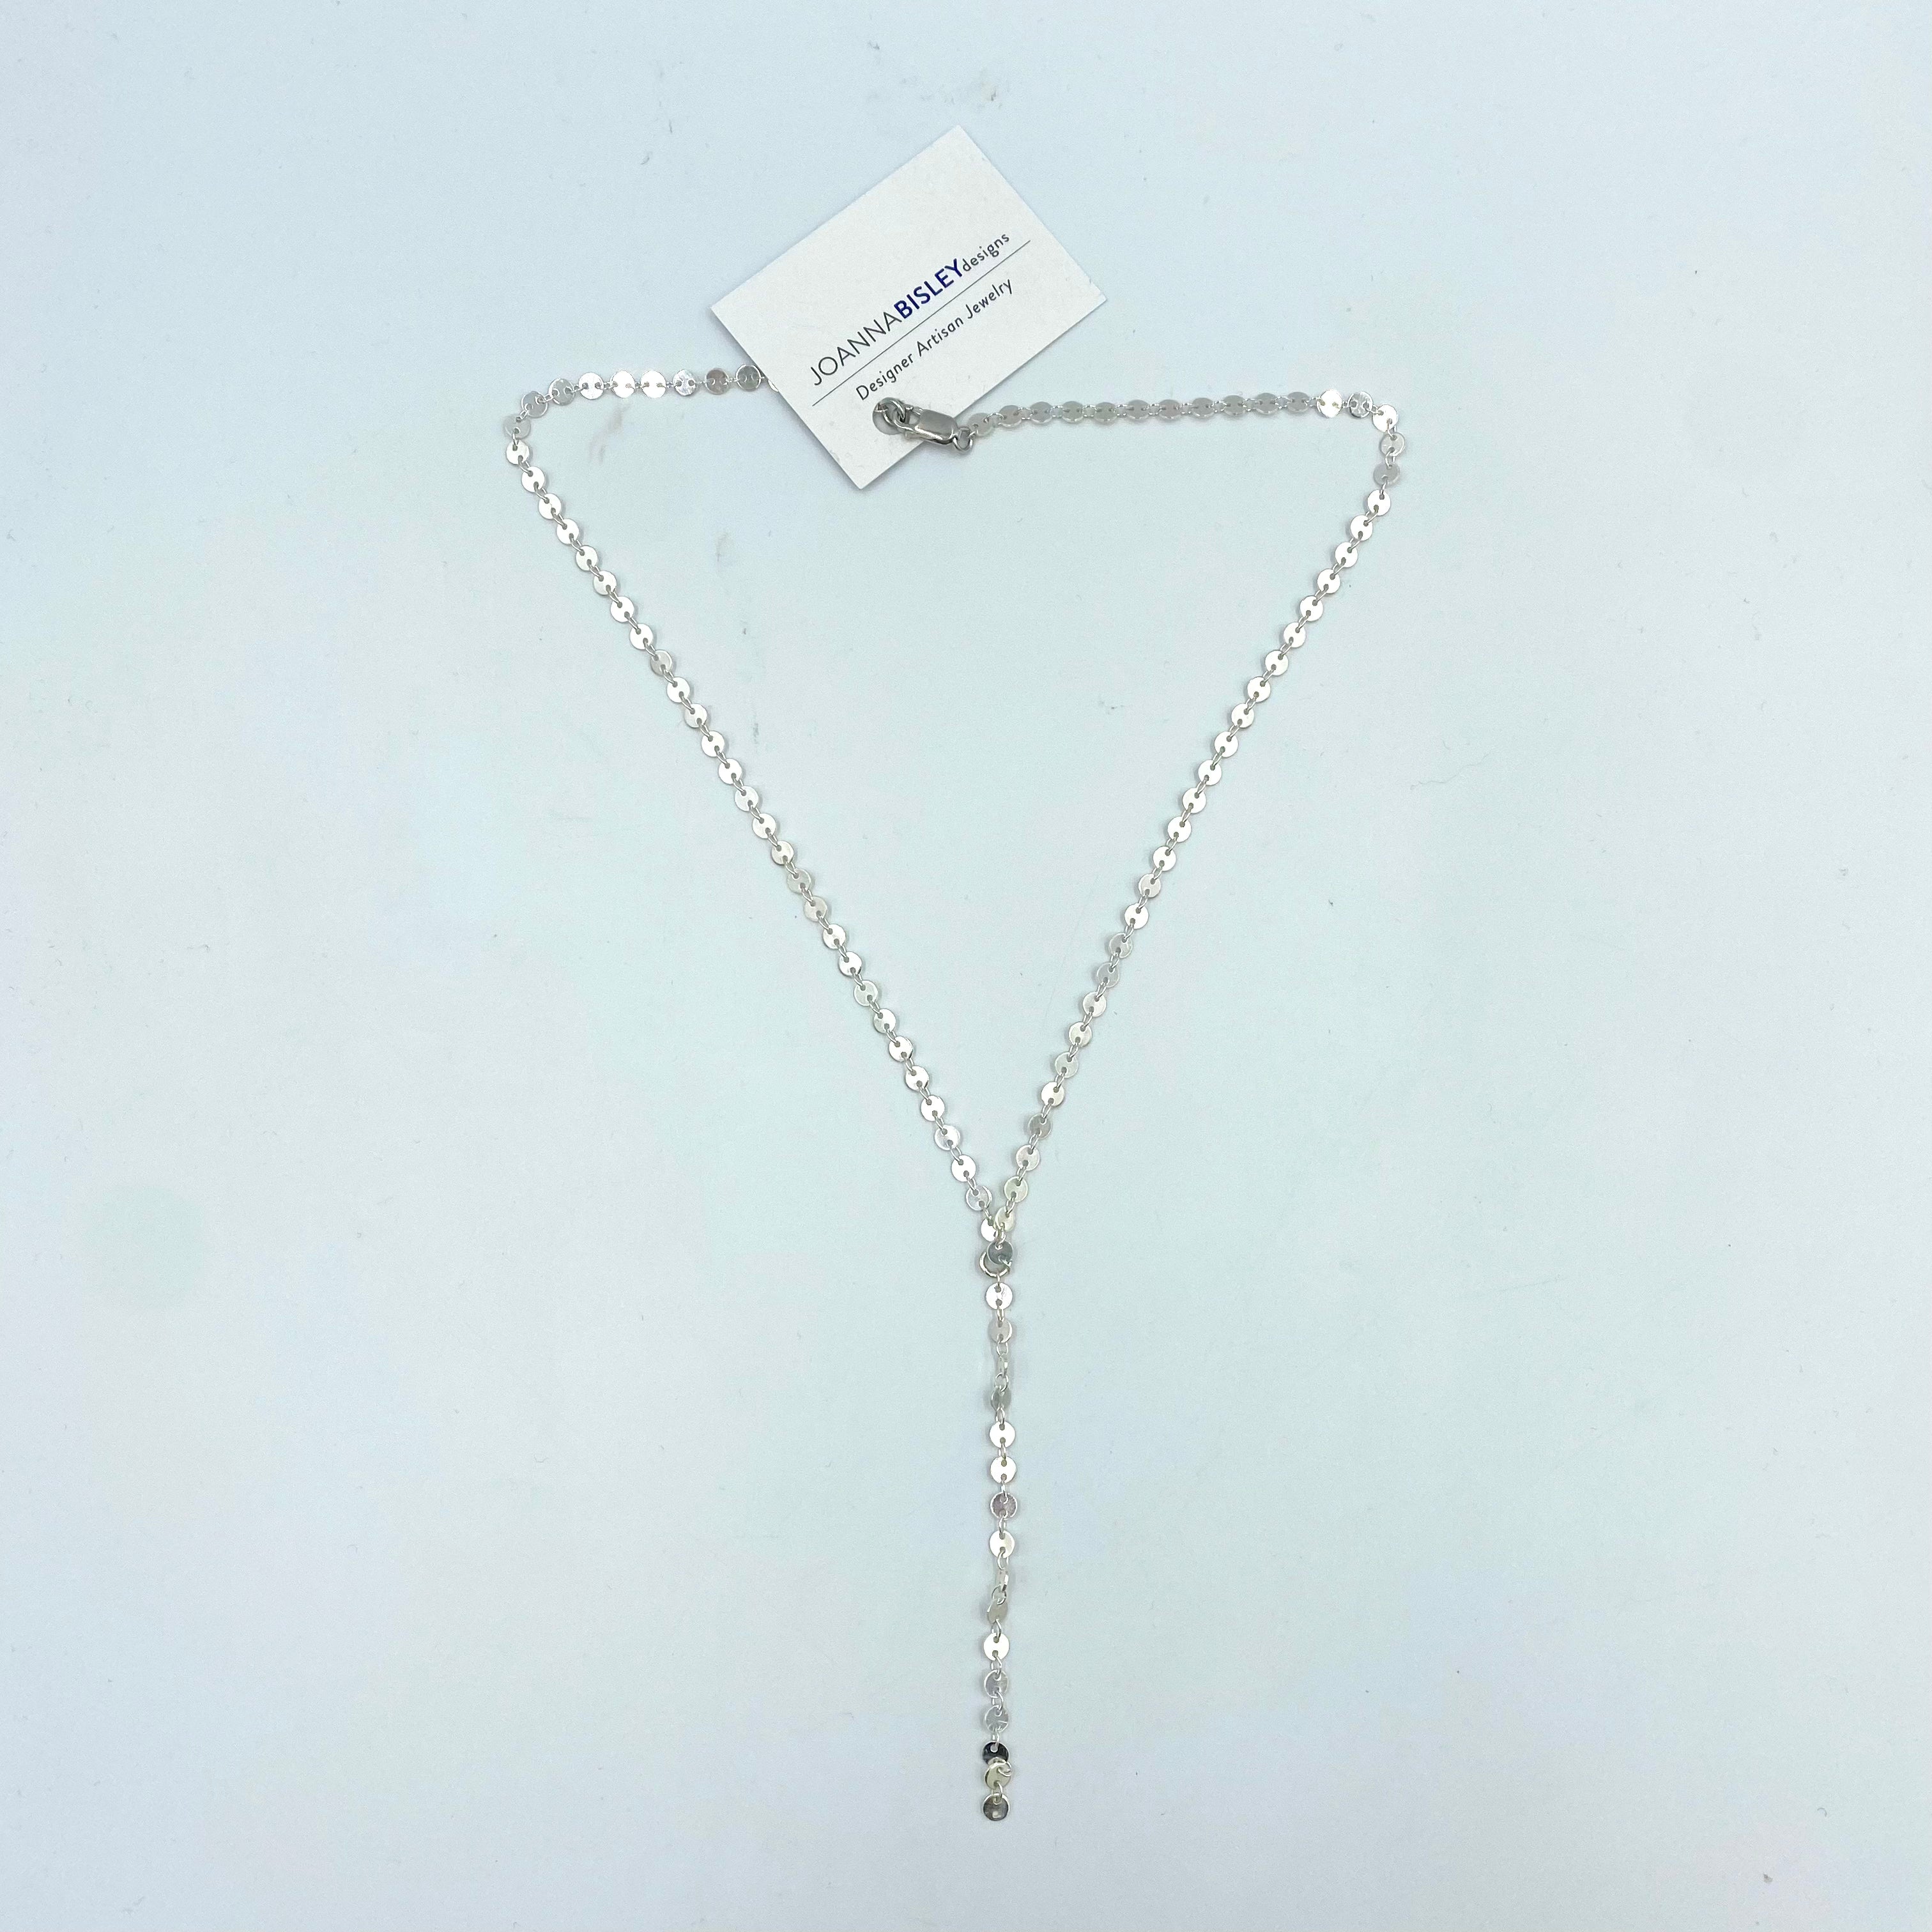 Joanna Bisley Silver Confetti Necklace - 0